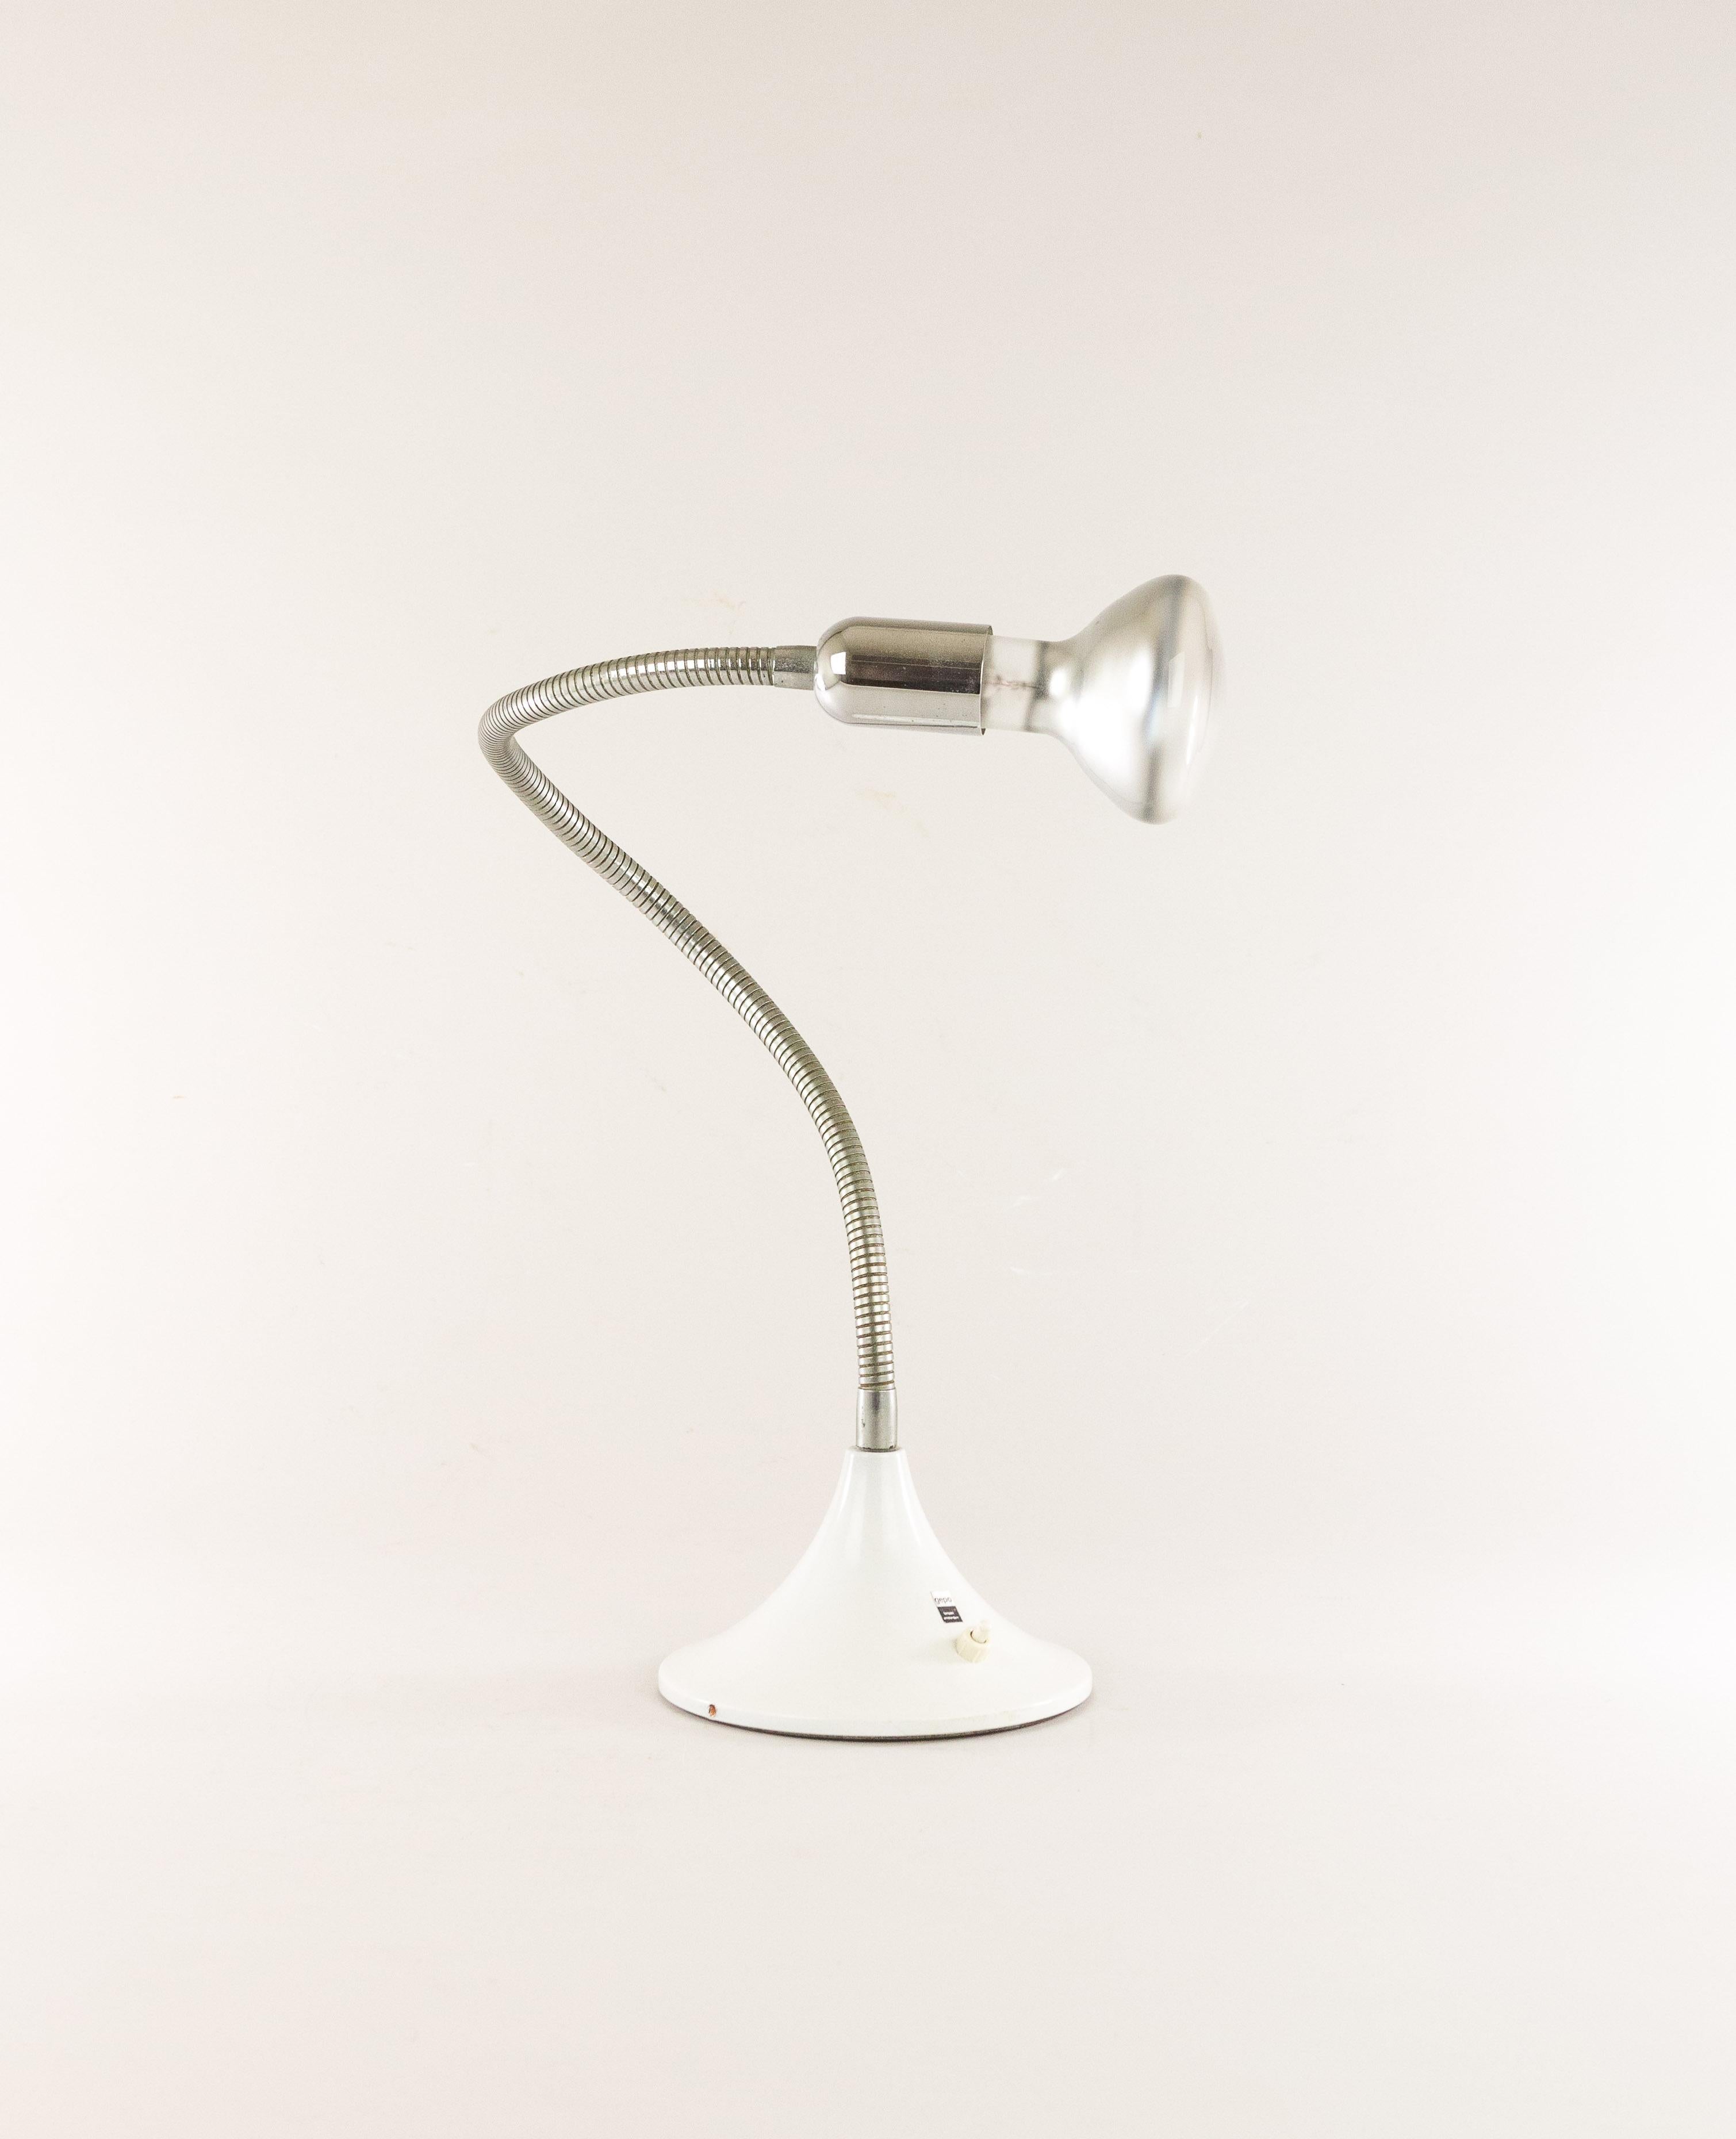 Verstellbare Lampe von Gepo, wahrscheinlich aus den 1970er Jahren. Wie auf den Fotos zu sehen ist, kann die Lampe sowohl als Wandlampe als auch als Tischlampe verwendet werden.

Gepo war ein Familienunternehmen, das 1965 von vier Brüdern gegründet